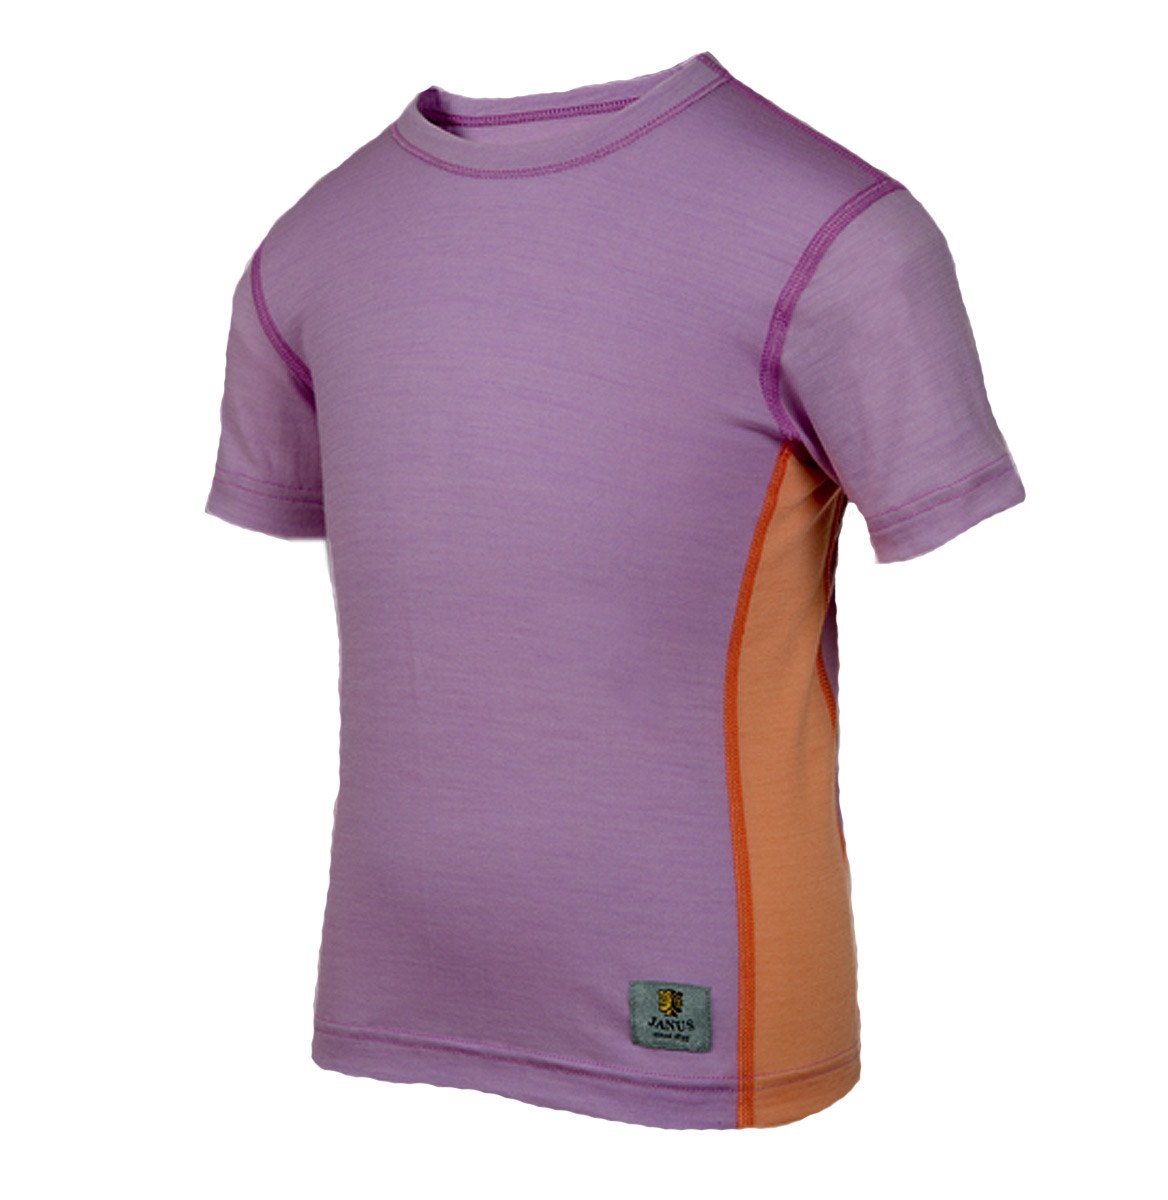 Janus LightWool barn t-shirt 100% merinoull lavendellila/orange